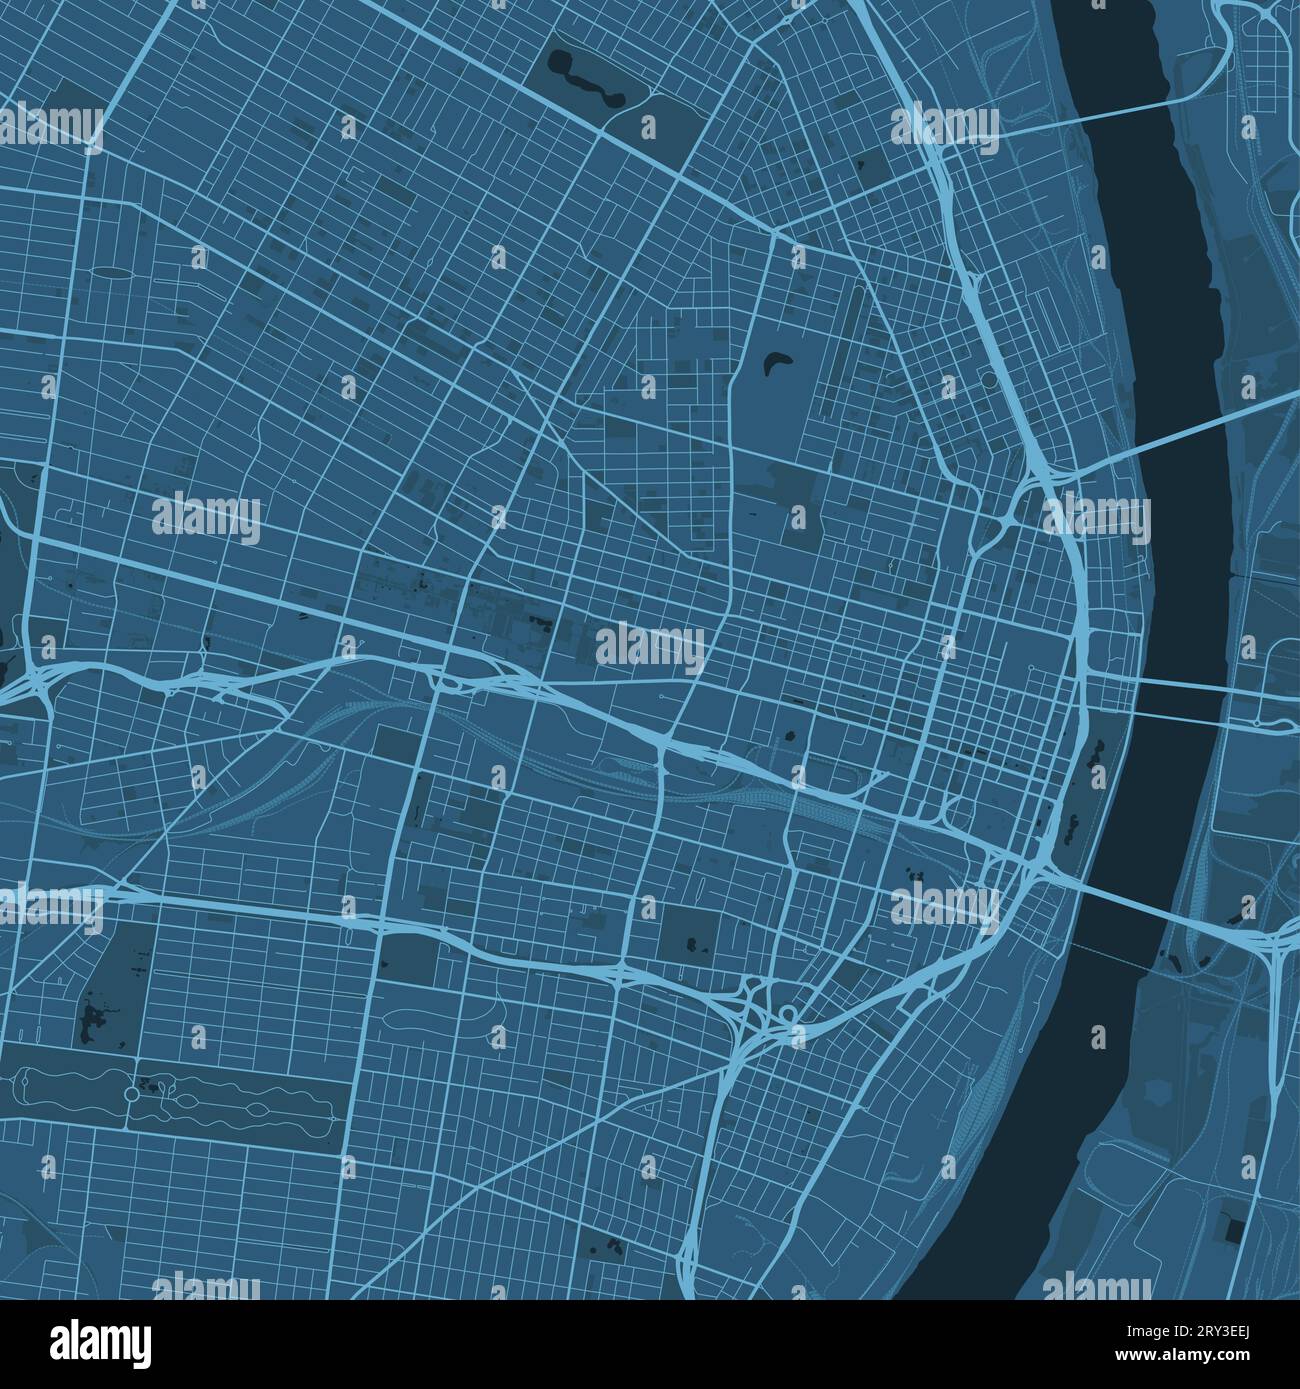 Blue St. Louis Karte, Missouri, Vereinigte Staaten, detaillierte Stadtkarte, Skyline Panorama. Dekorative grafische touristische Karte von St. Louis Territory. Royal Stock Vektor